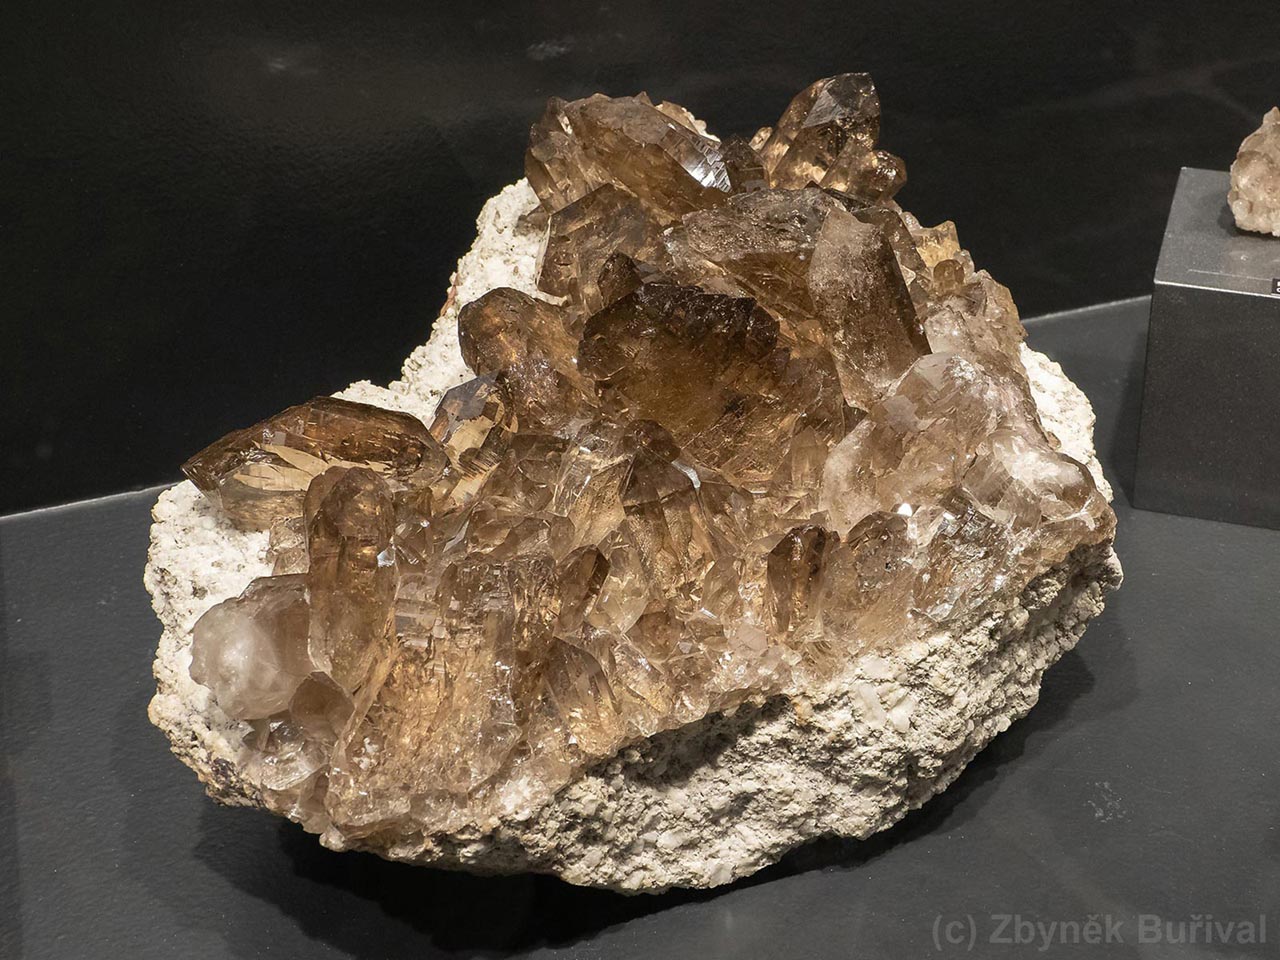 smoky quartz crystals cluster with several gwindels from Göscheneralp, Switzerland